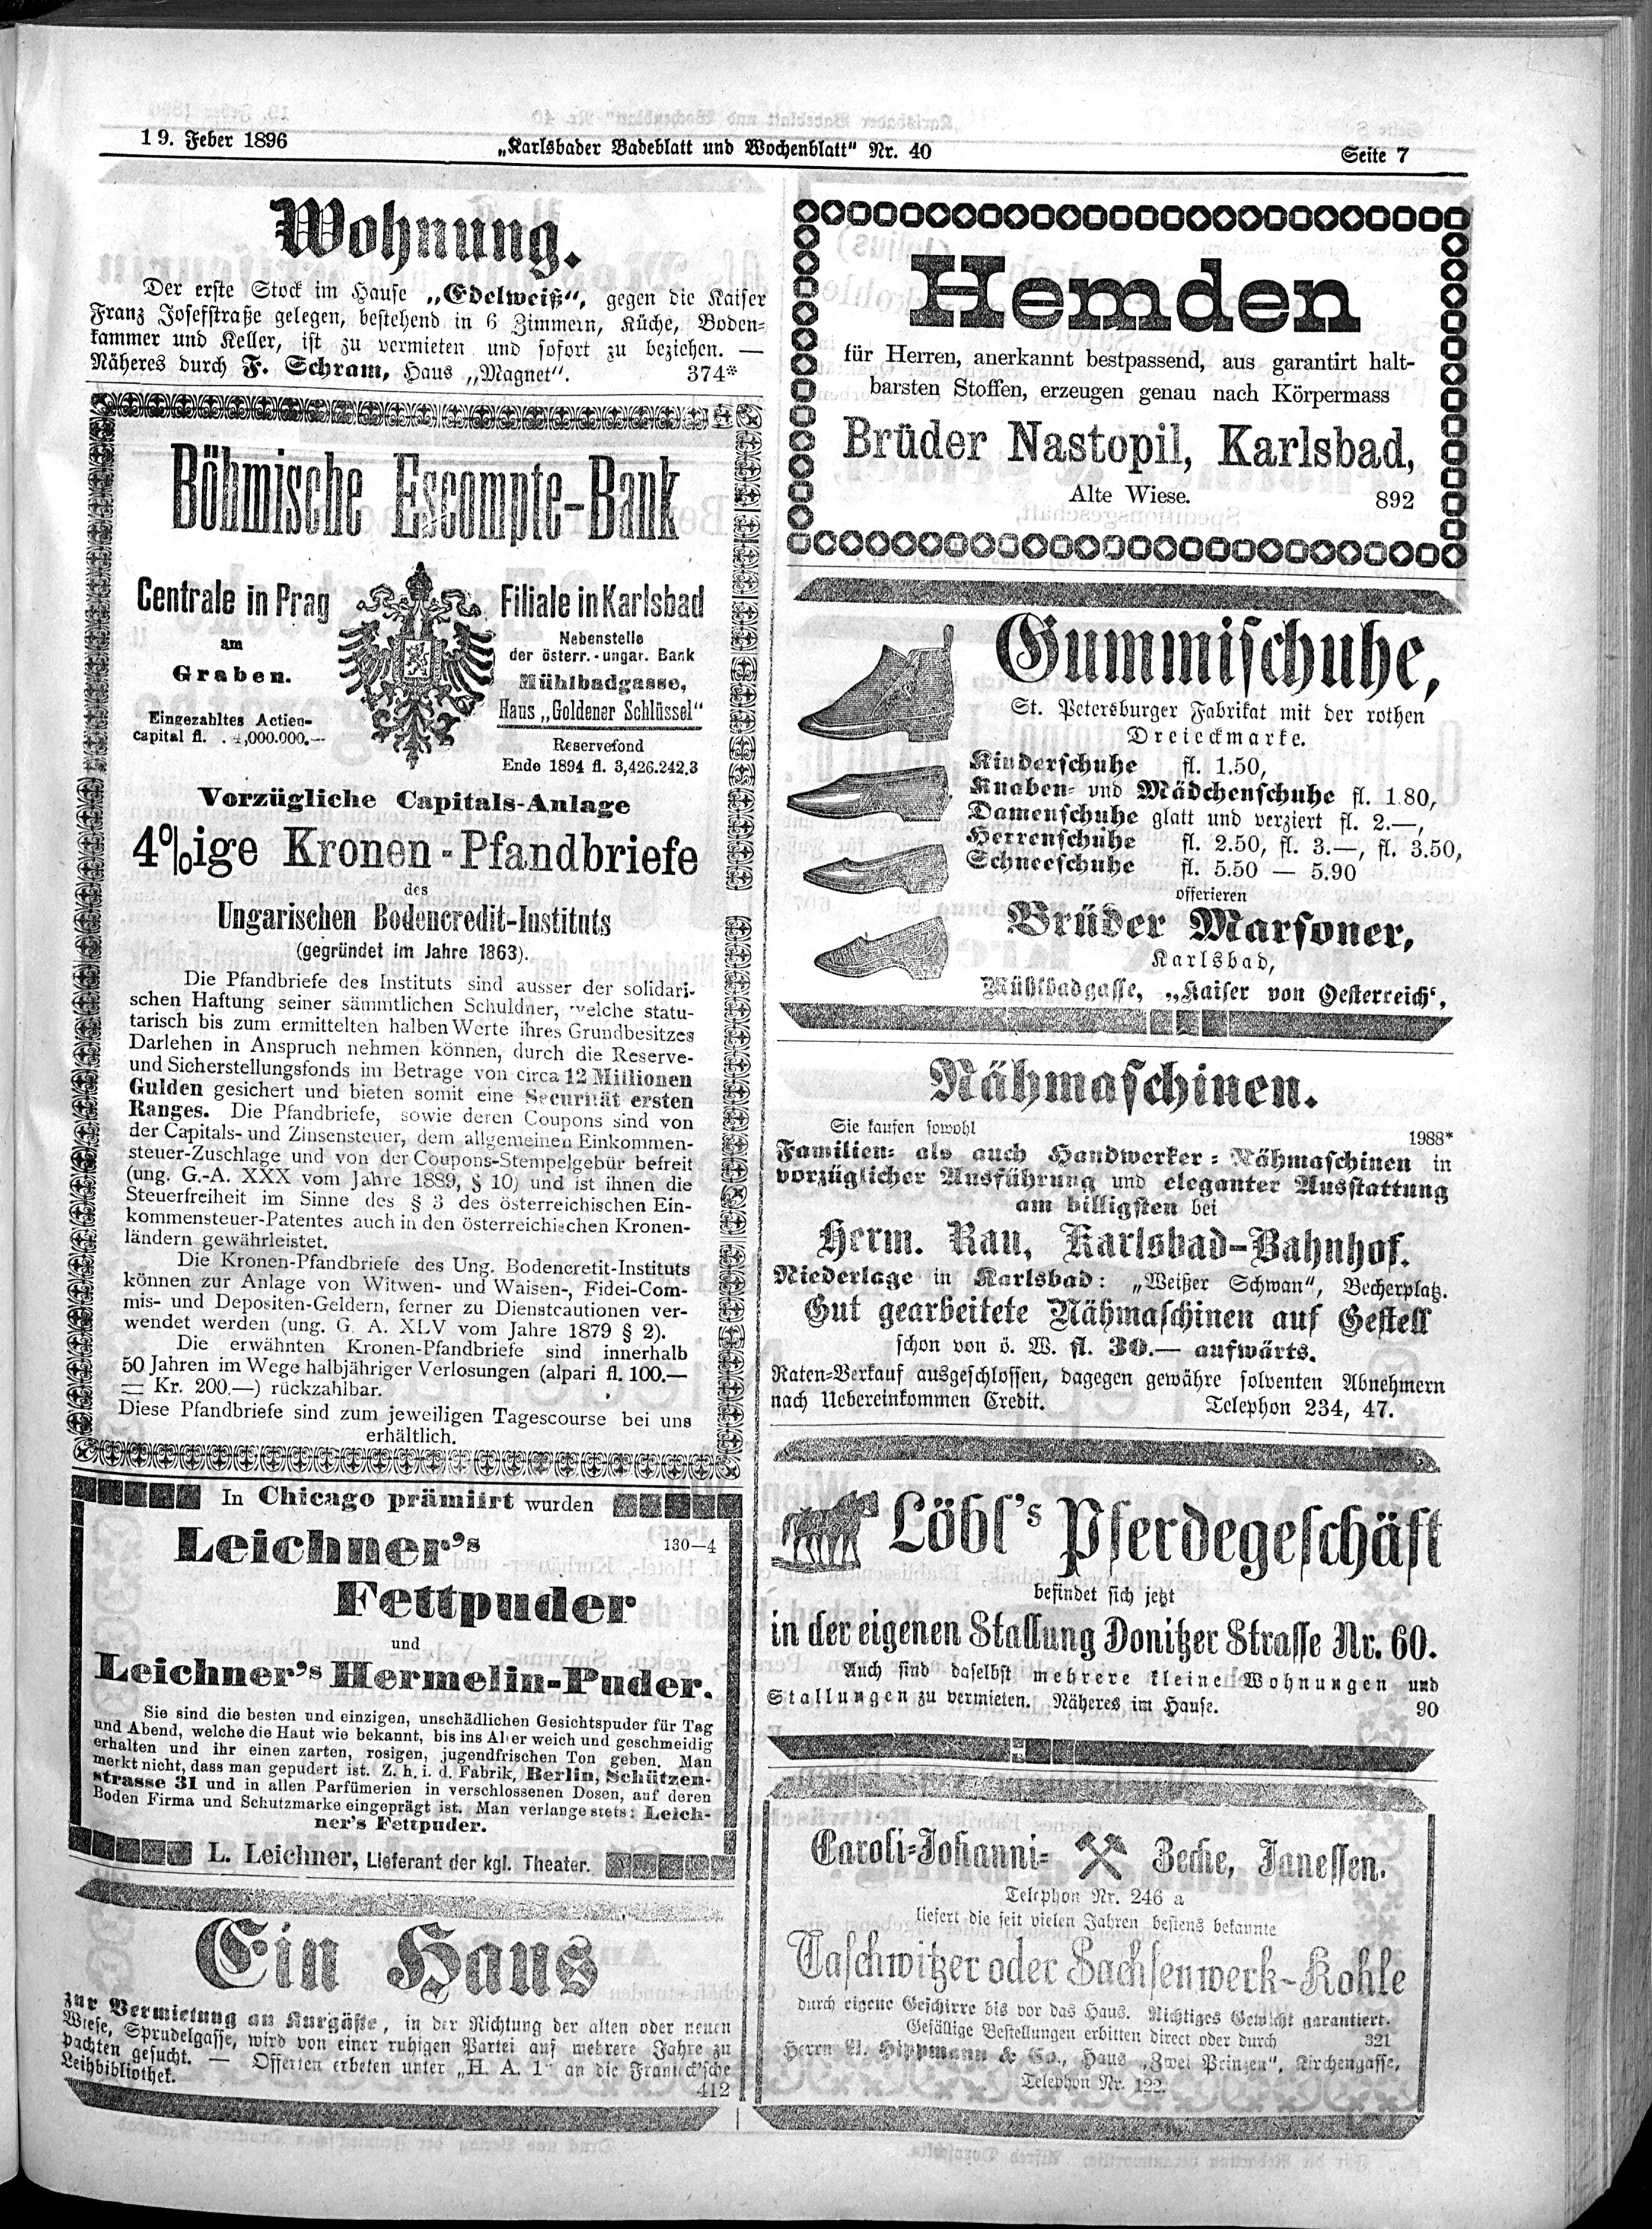 7. karlsbader-badeblatt-1896-02-19-n40_1745